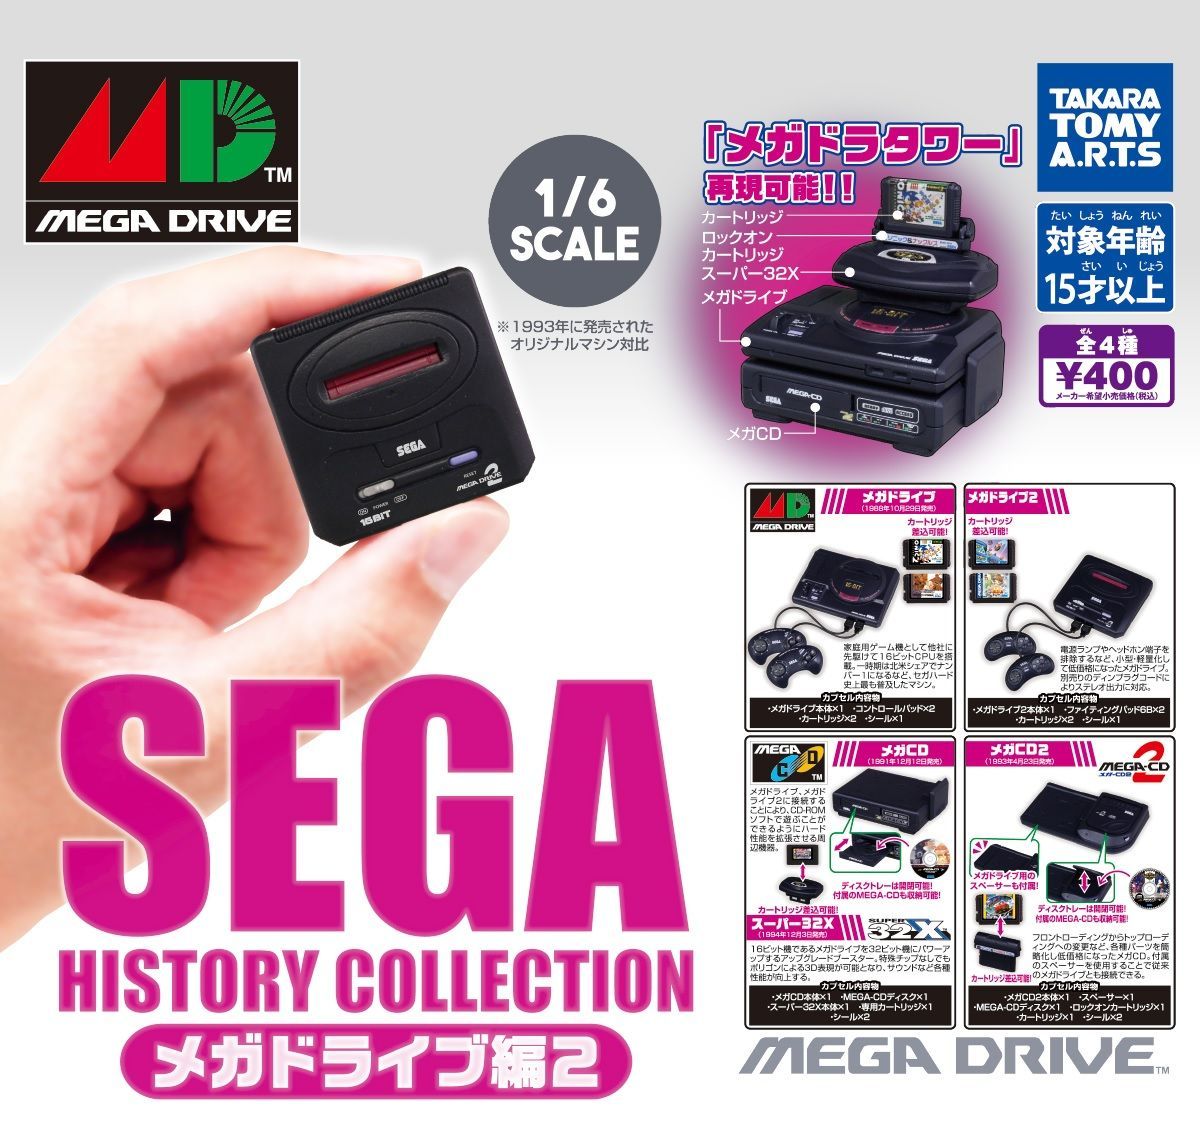 SEGA HISTORY COLLECTION メガドライブ編2 全4種フルコンプセット